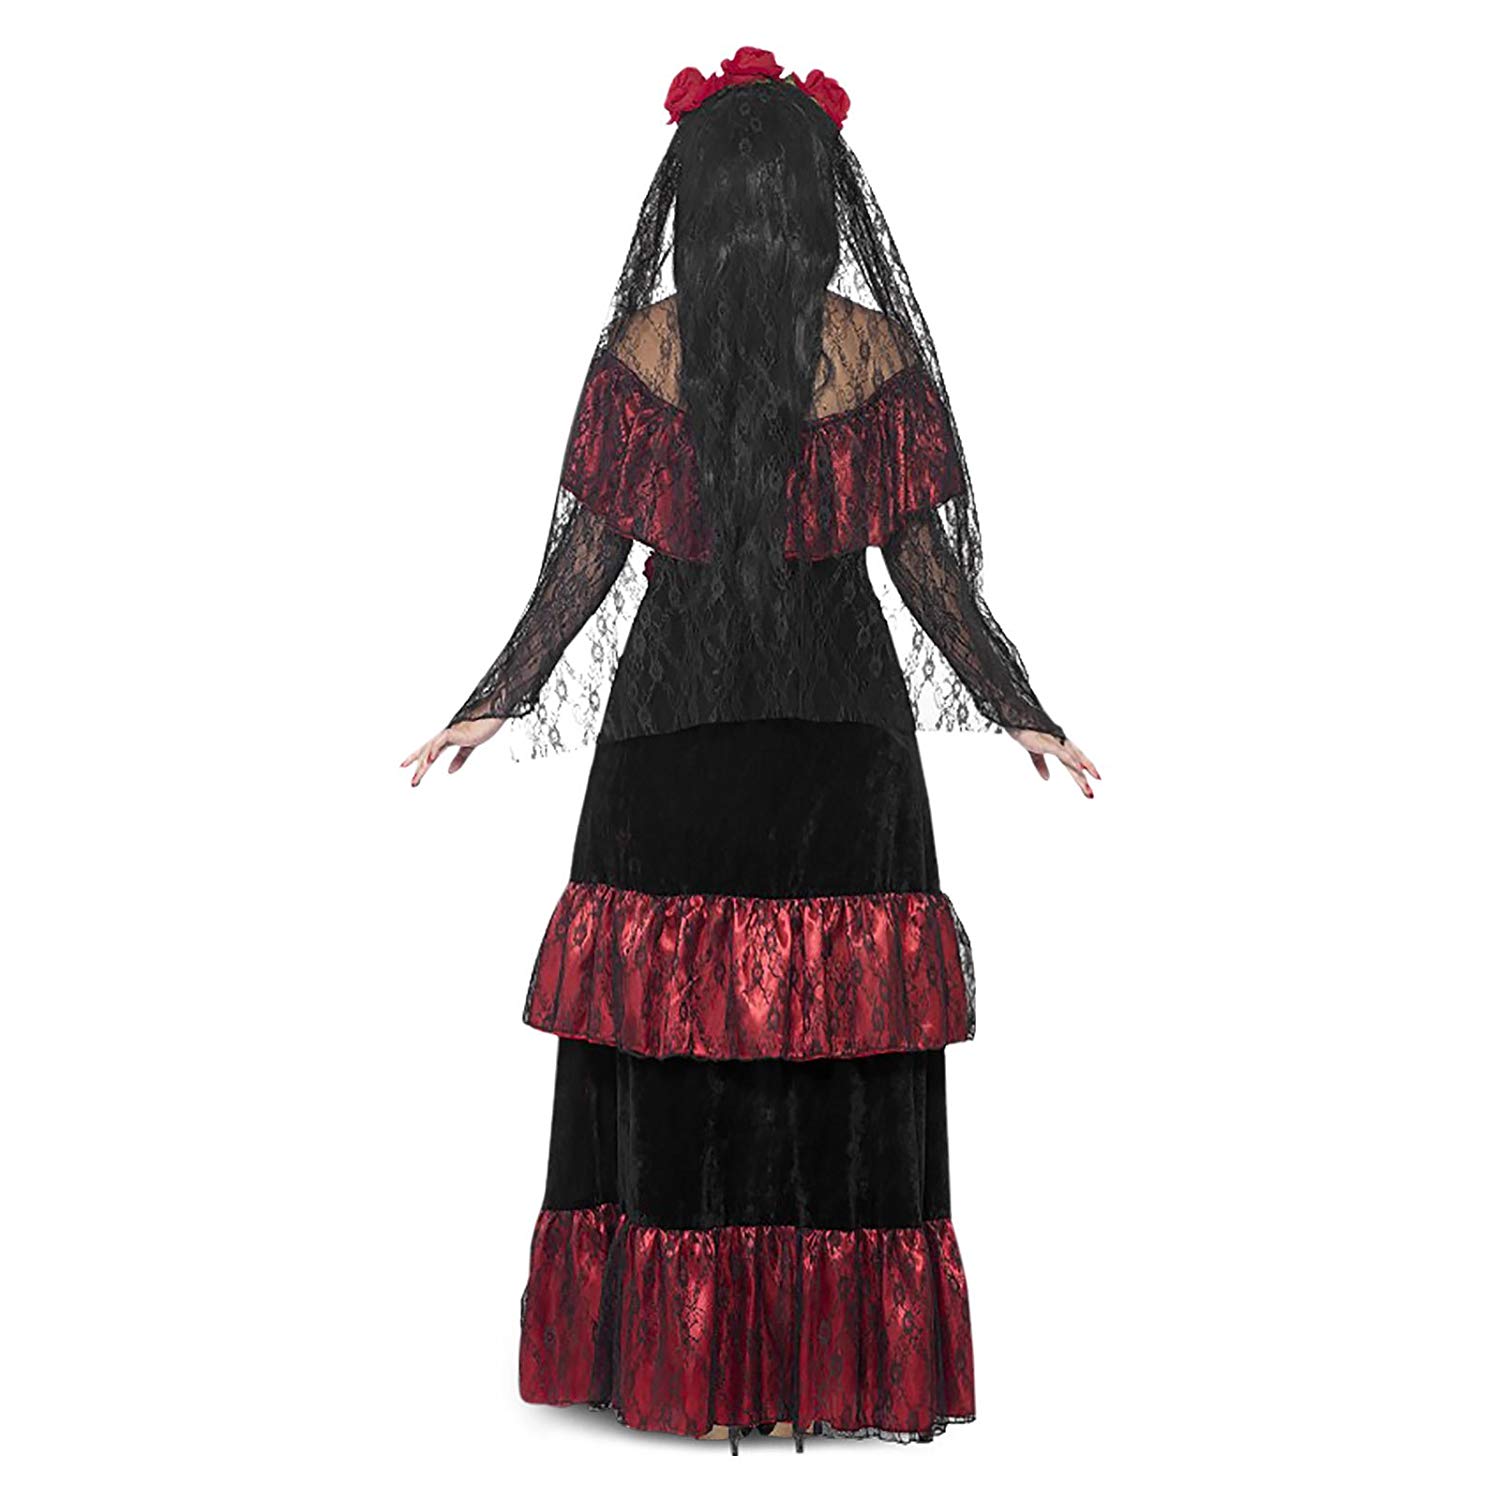 Verkleidung Halloween Frisch Przebrania I Kostiumy Gothic Brautkleid Sugar Skull Kostüm